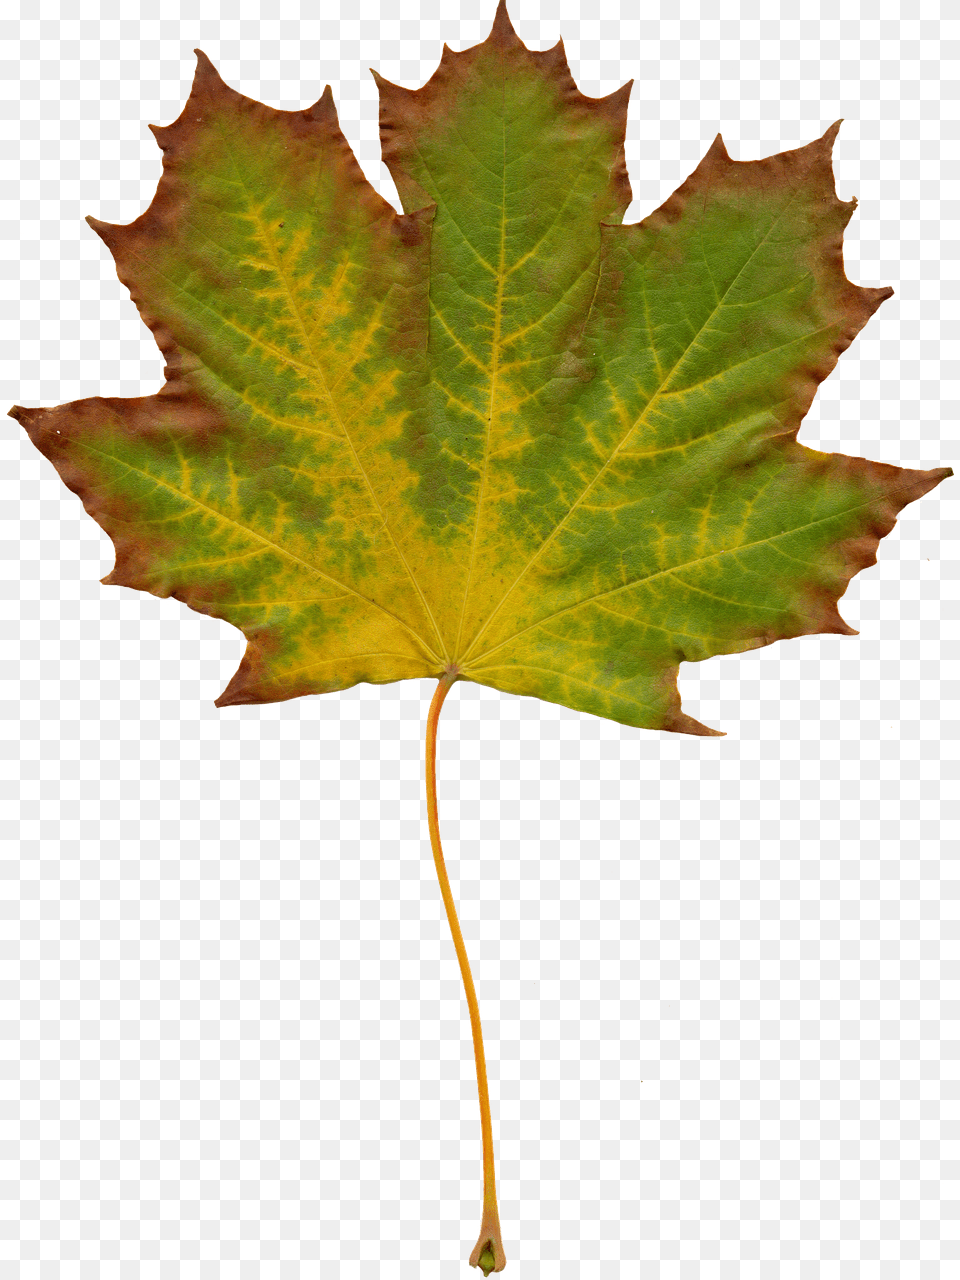 Leaves Leaf, Plant, Tree, Maple Leaf Png Image